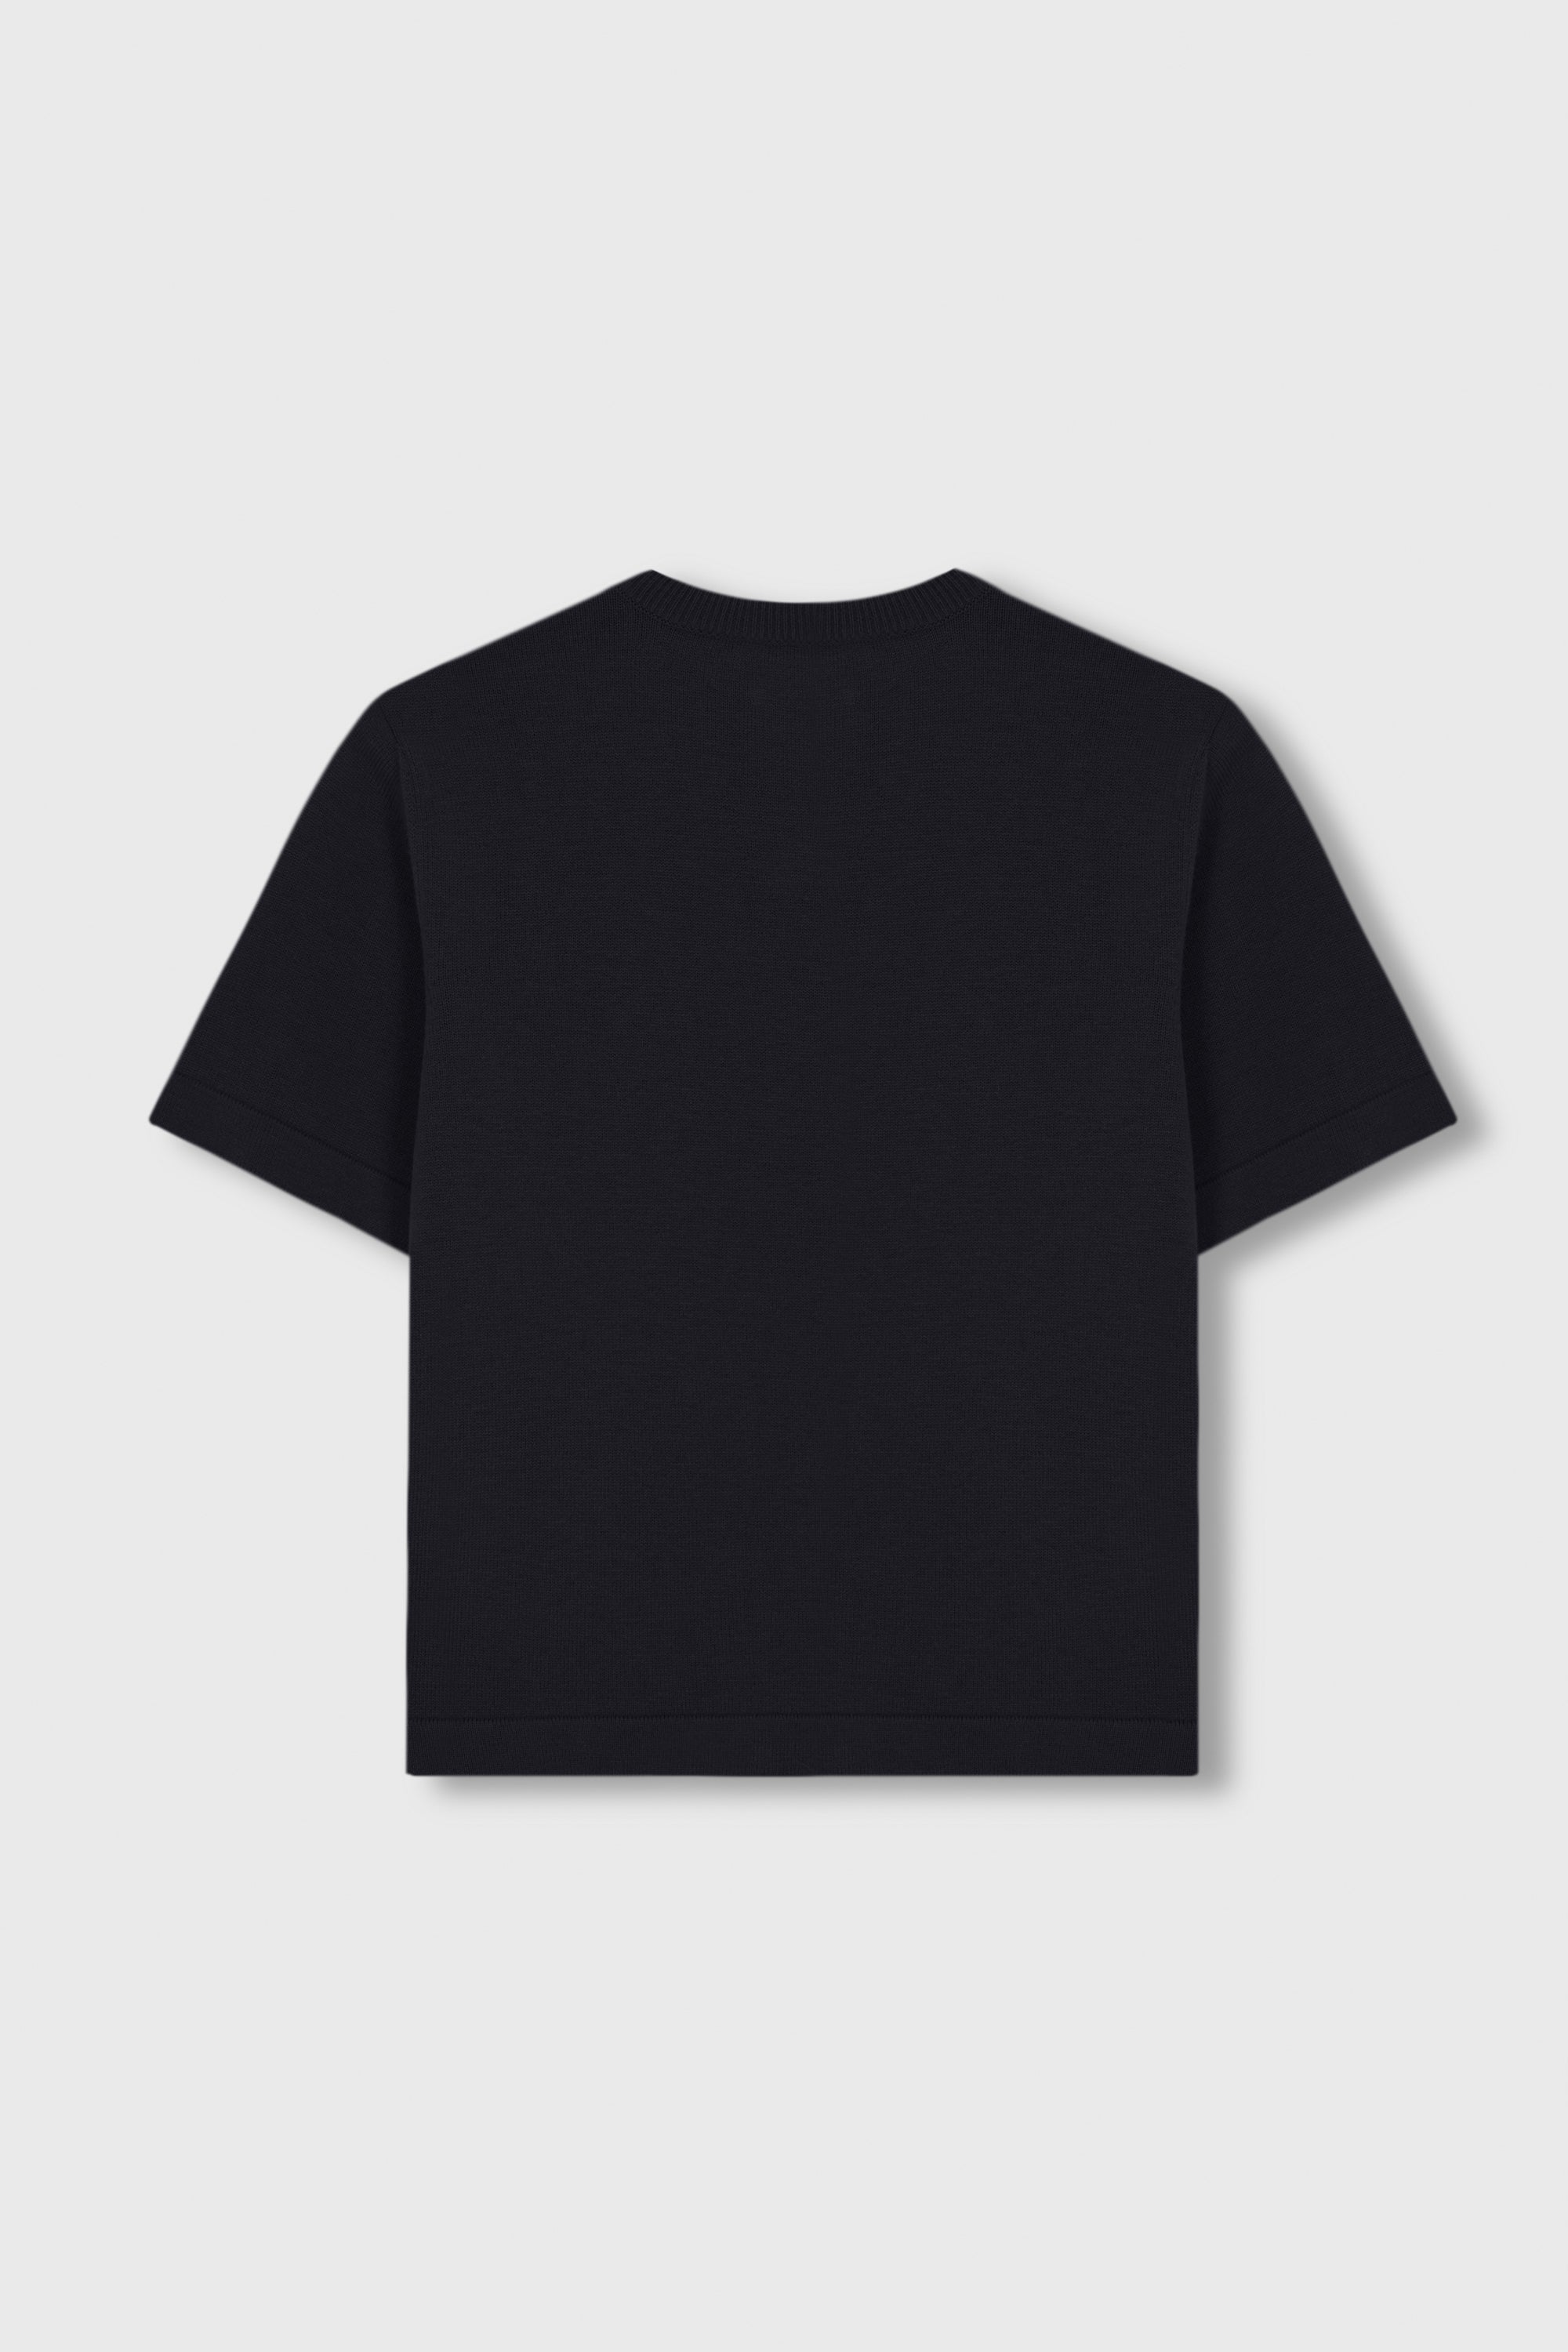 Merino Wool T-shirt Black Cordera